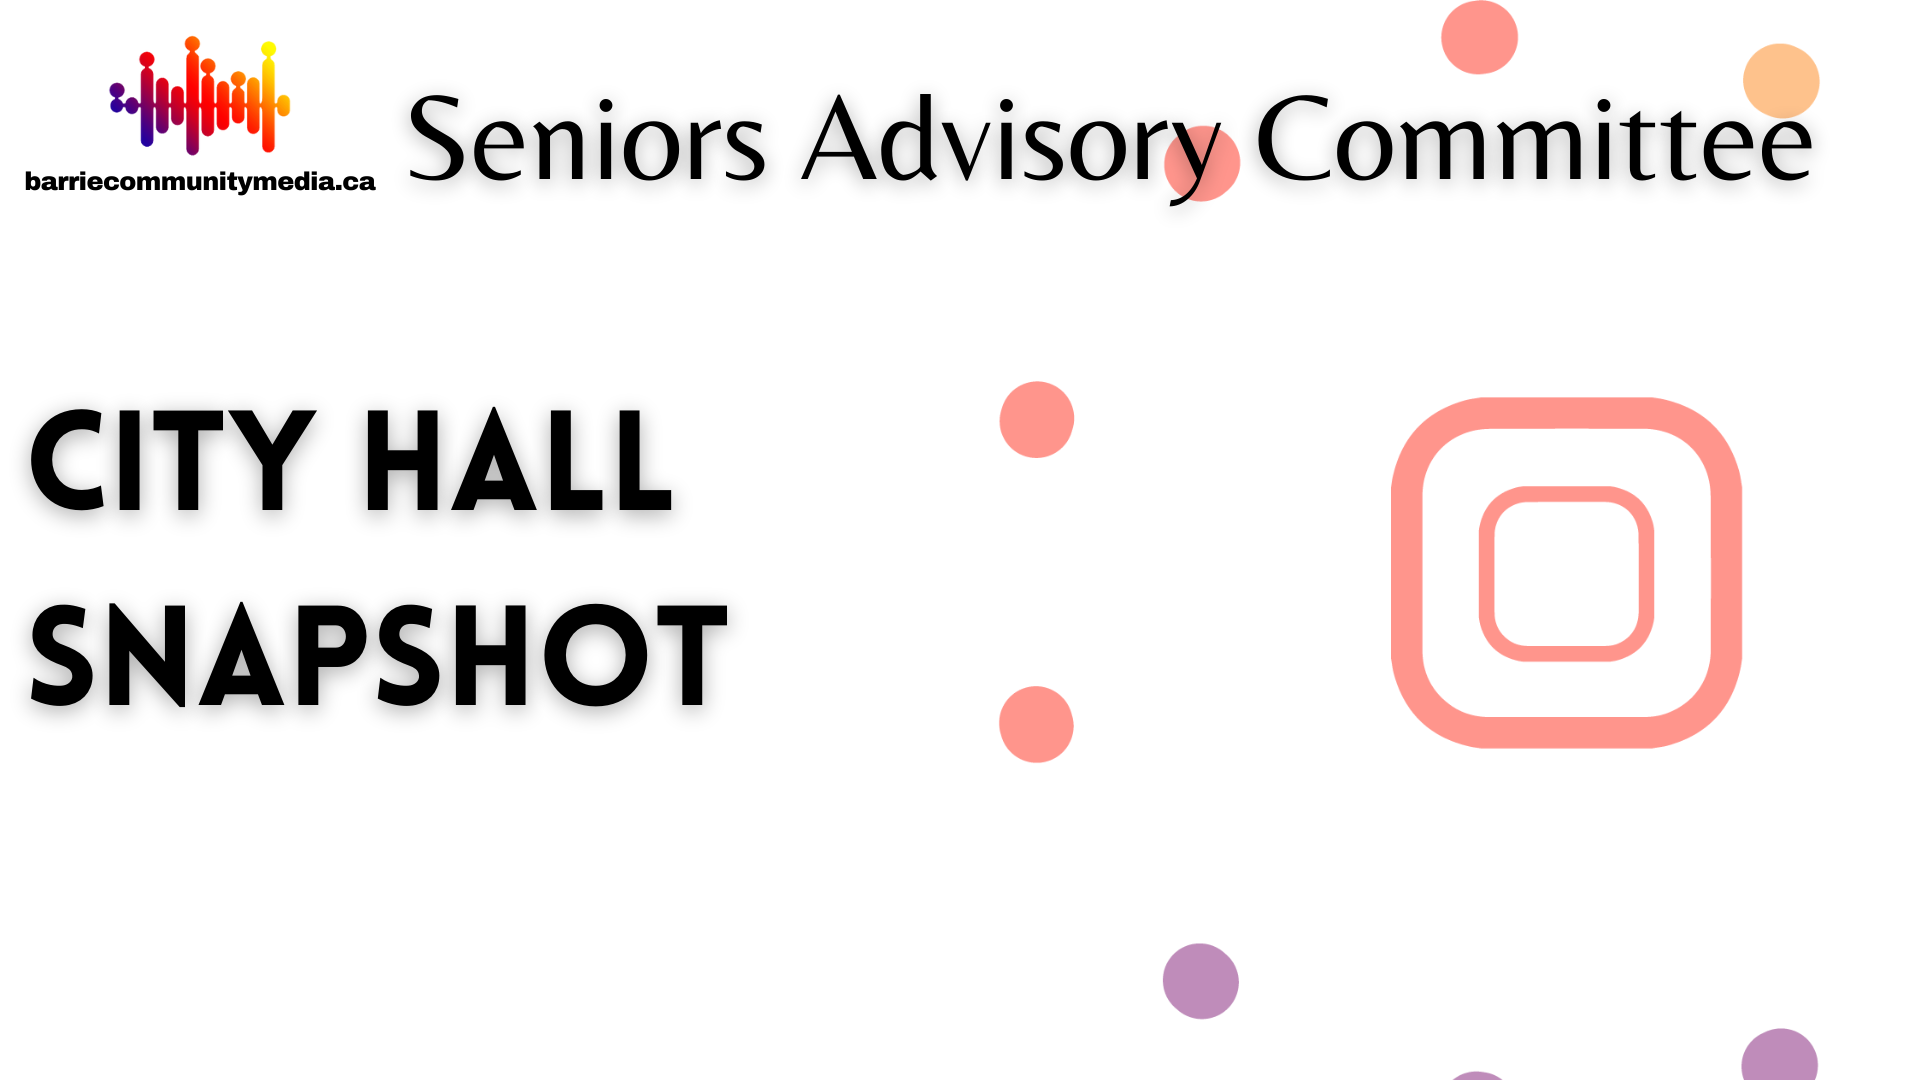 City Hall Snapshot – Seniors Advisory Committee Meeting